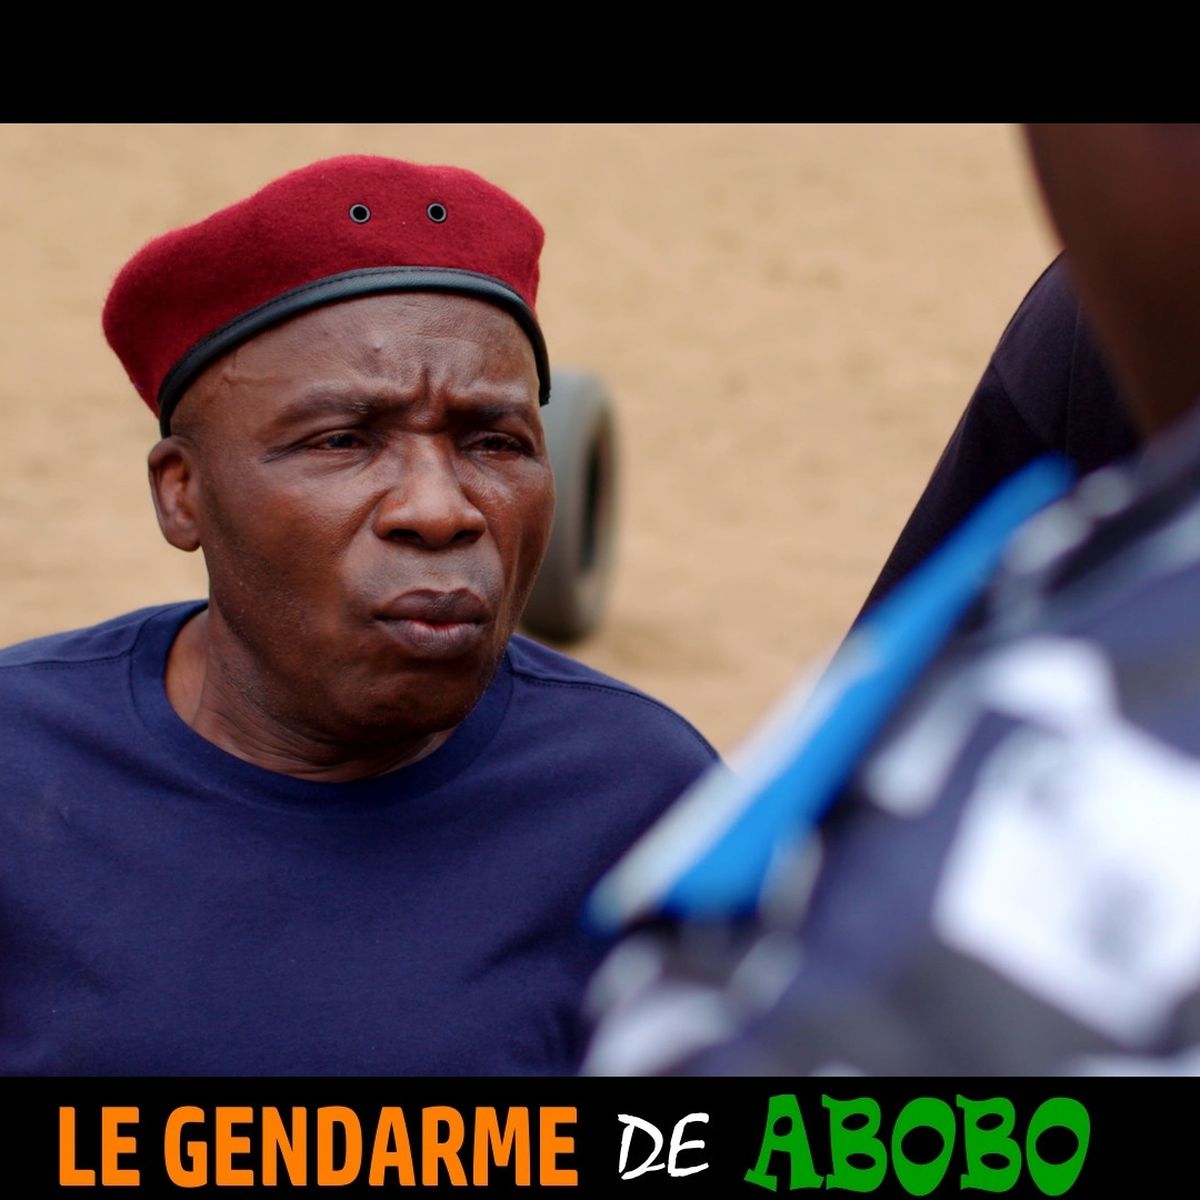 Le gendarme de Abobo